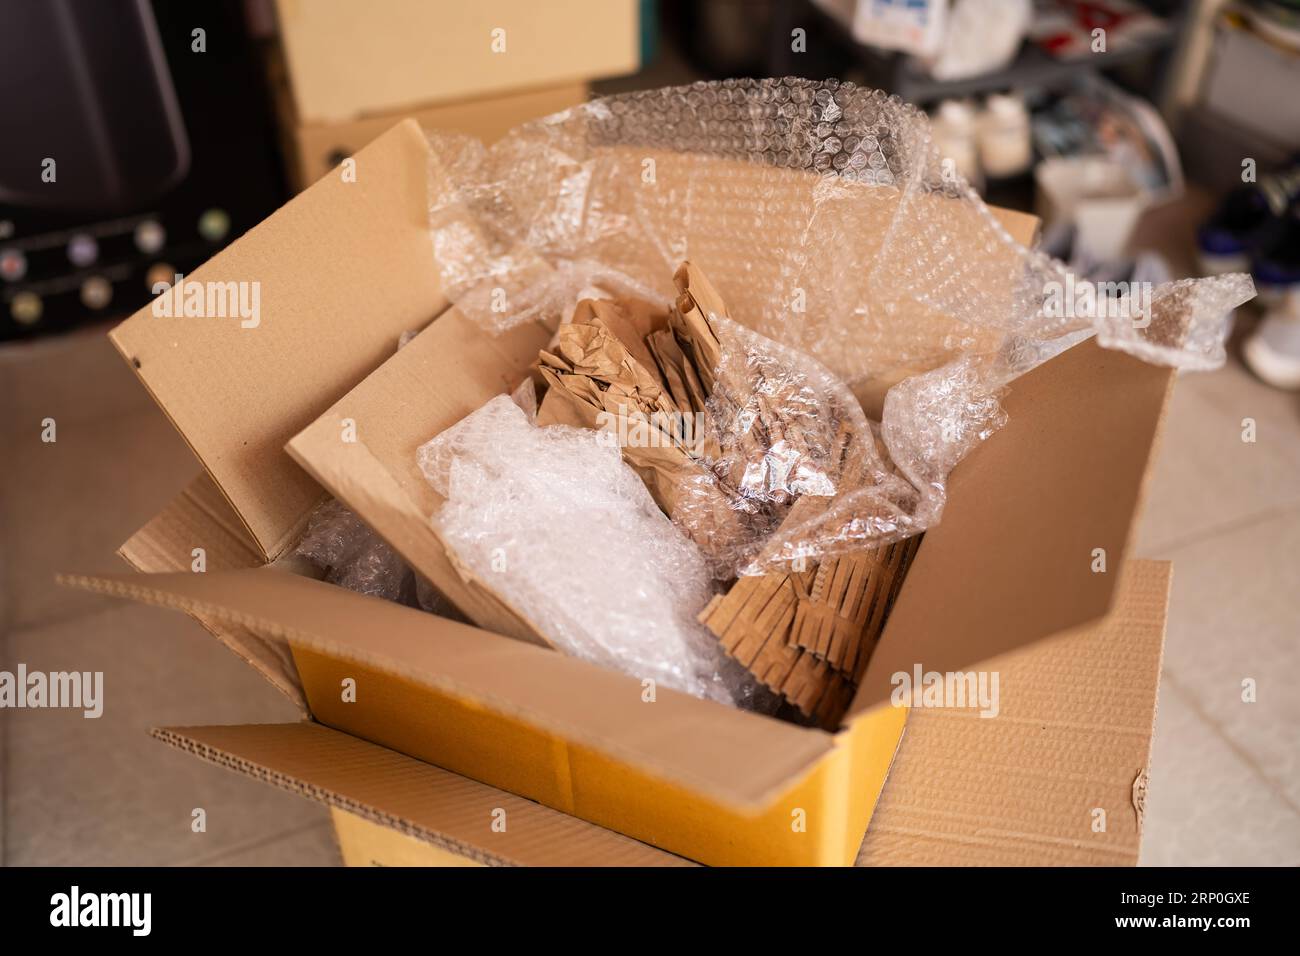 Material de embalaje dentro de una caja para el envío. Diferentes  envolturas como papel reciclado y hojas de espuma de plástico para envolver  algo Fotografía de stock - Alamy